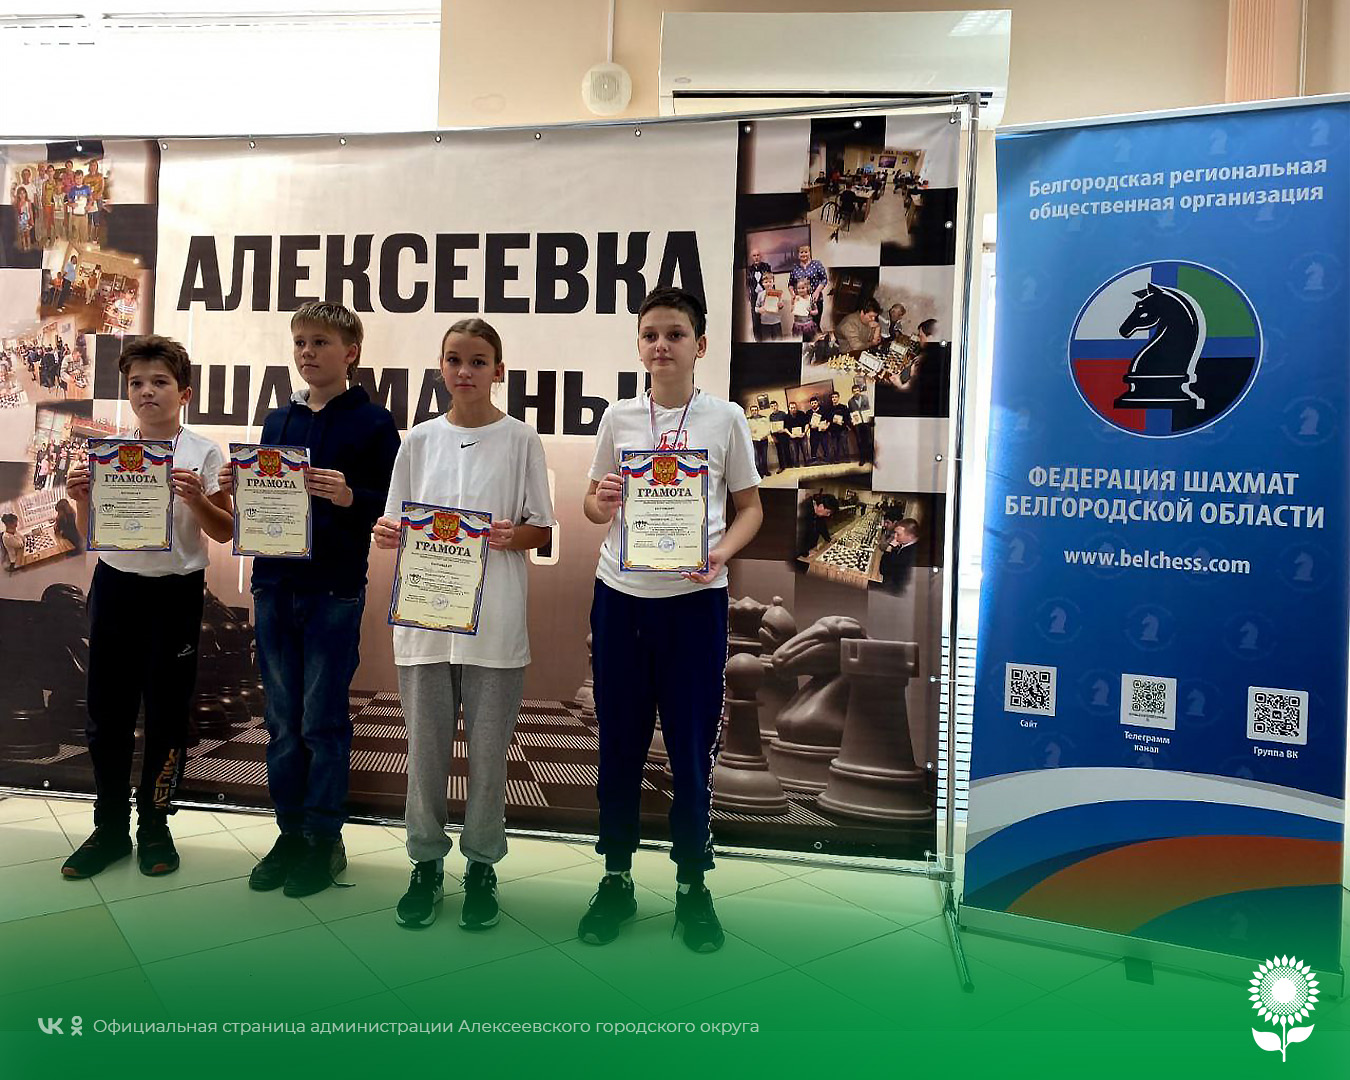 В Алексеевке состоялись традиционные соревнования по быстрым шахматам в рамках мемориала памяти Николая Александровича Кустова.